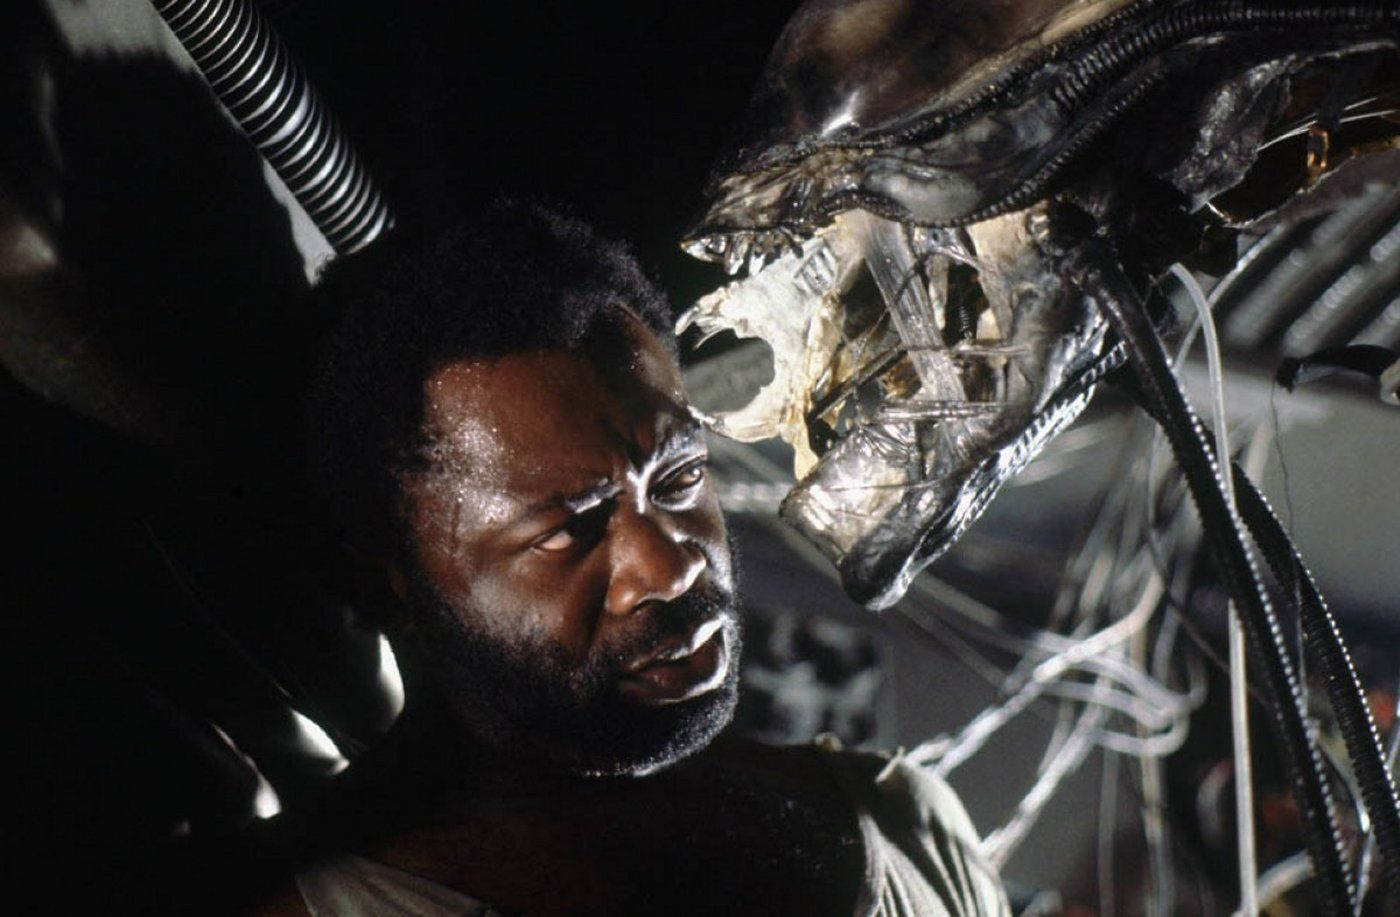 Yaphet Kotto In Alien Background